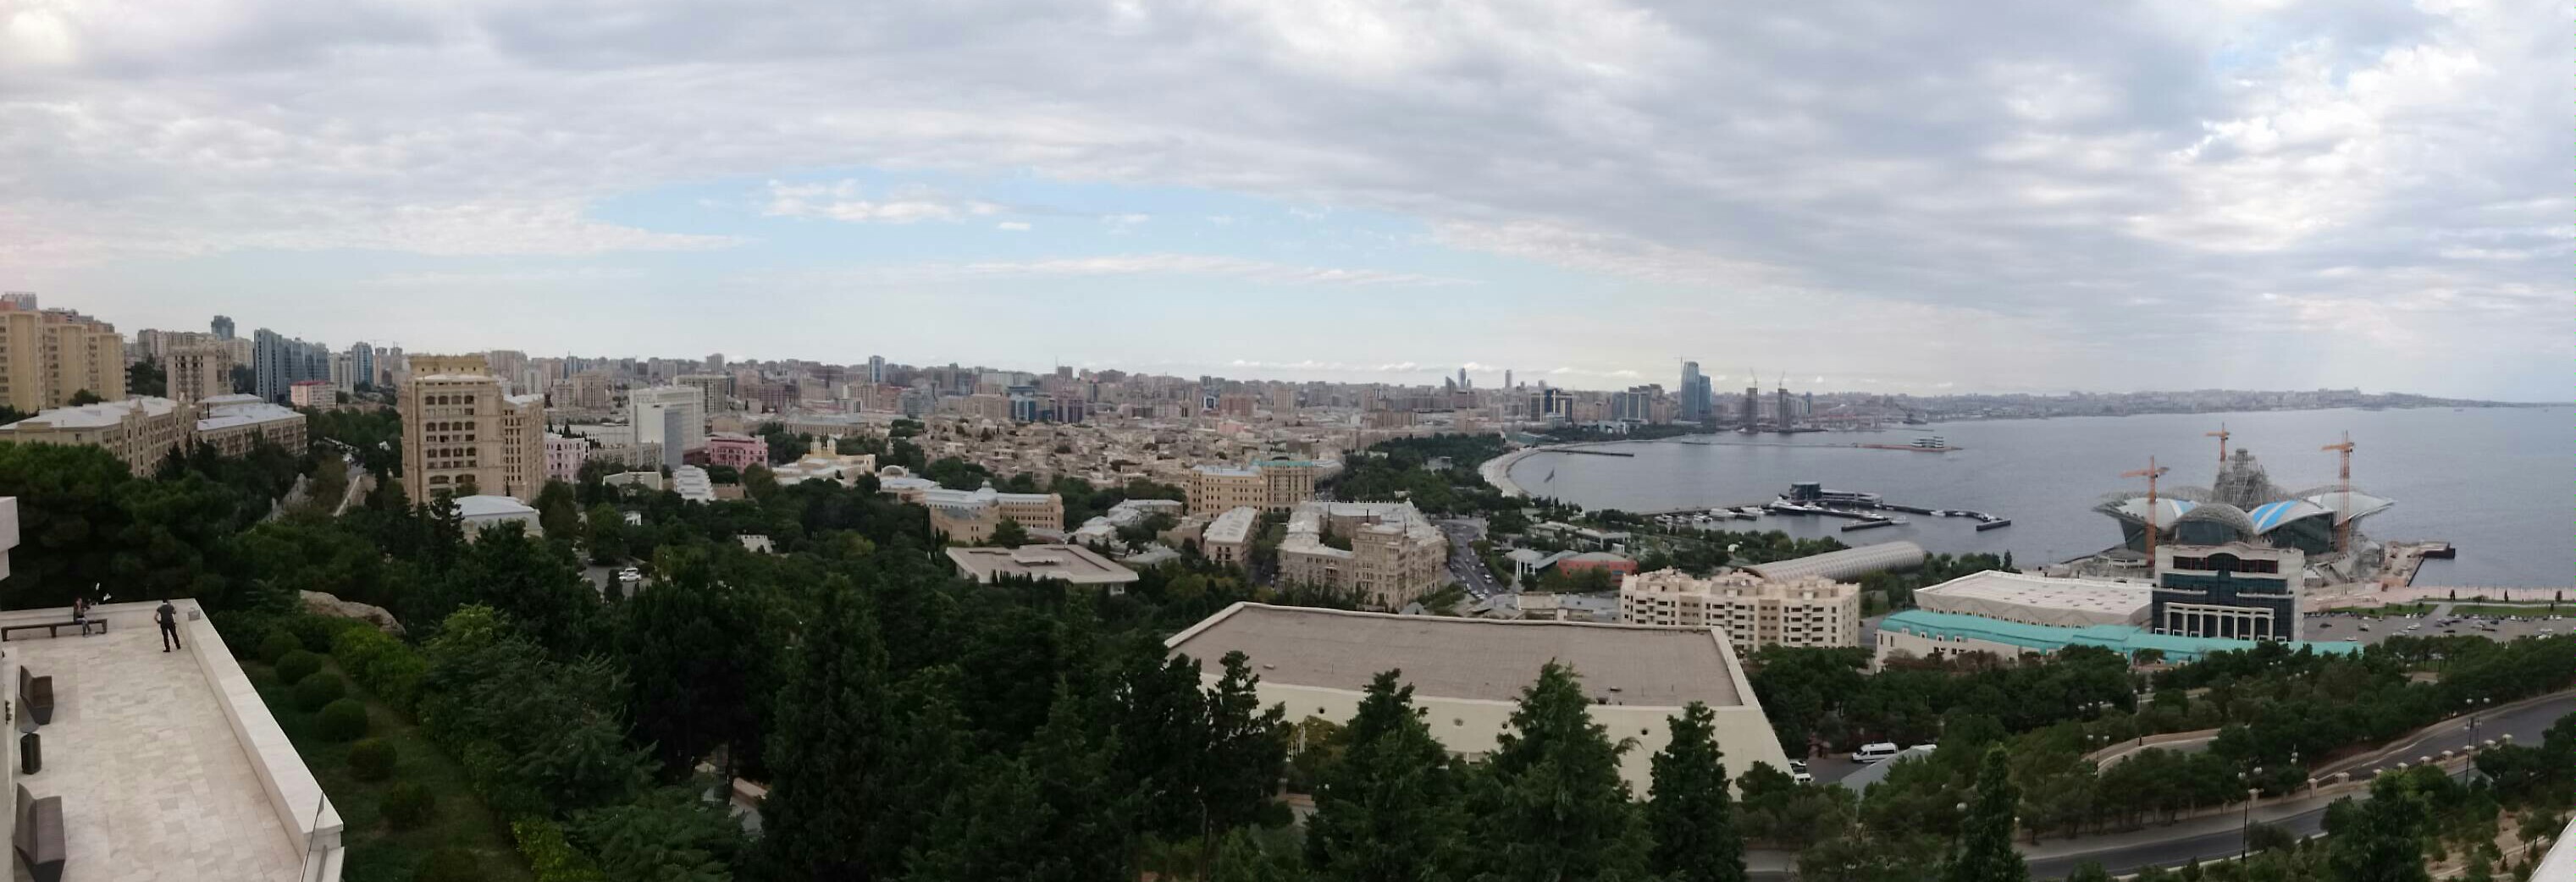 90 degree view of  Baku